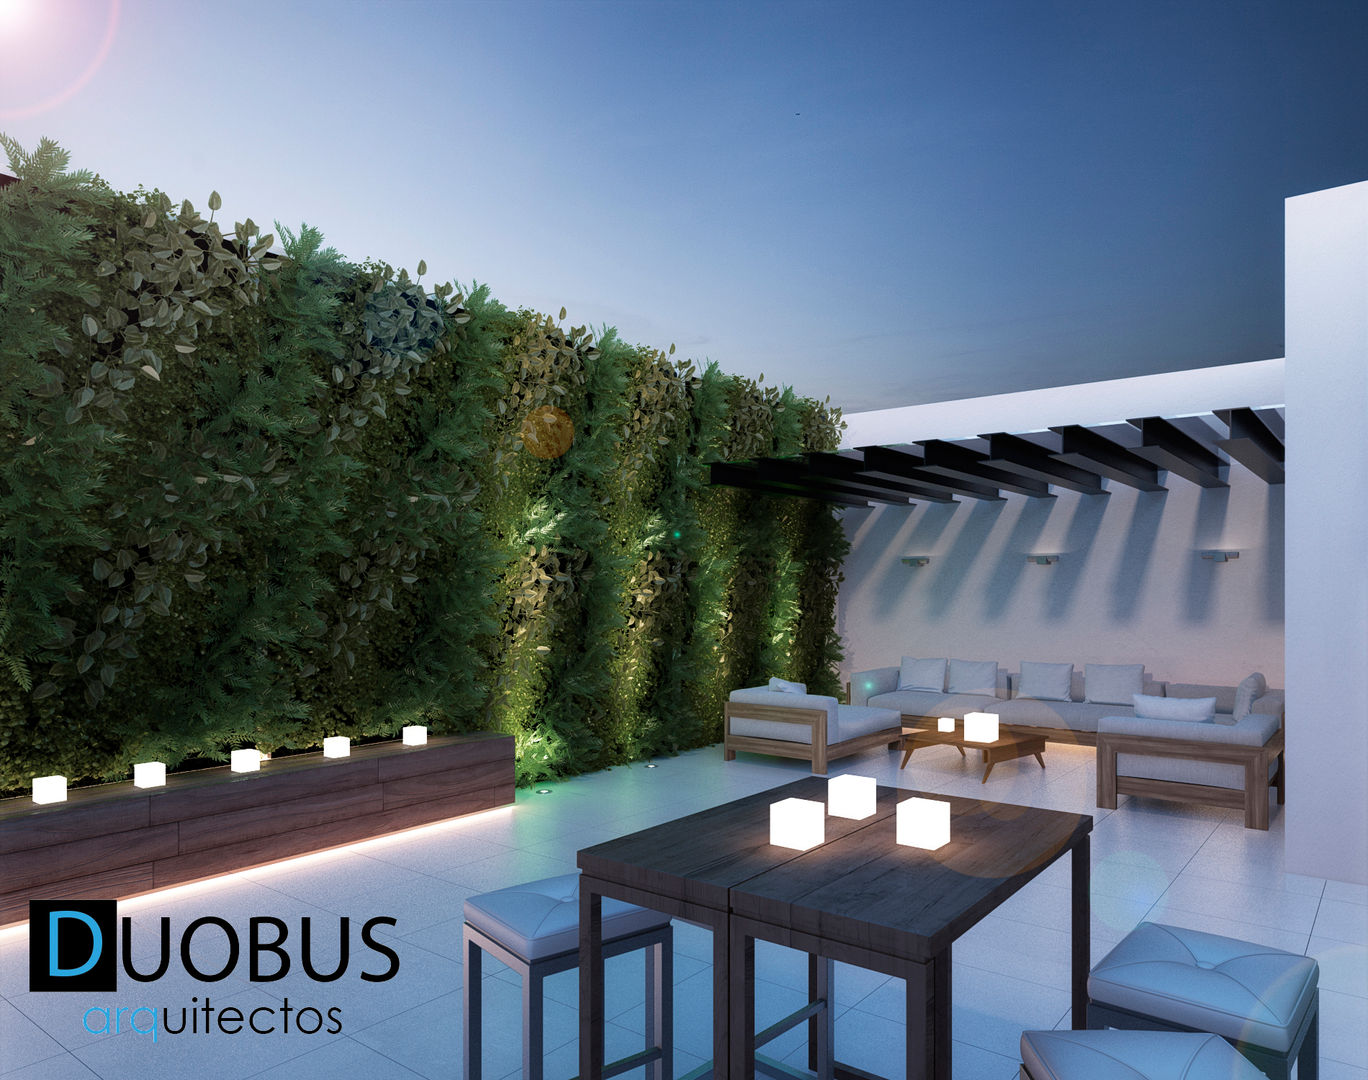 roof garden. DUOBUS M + L arquitectos Balcones y terrazas modernos: Ideas, imágenes y decoración